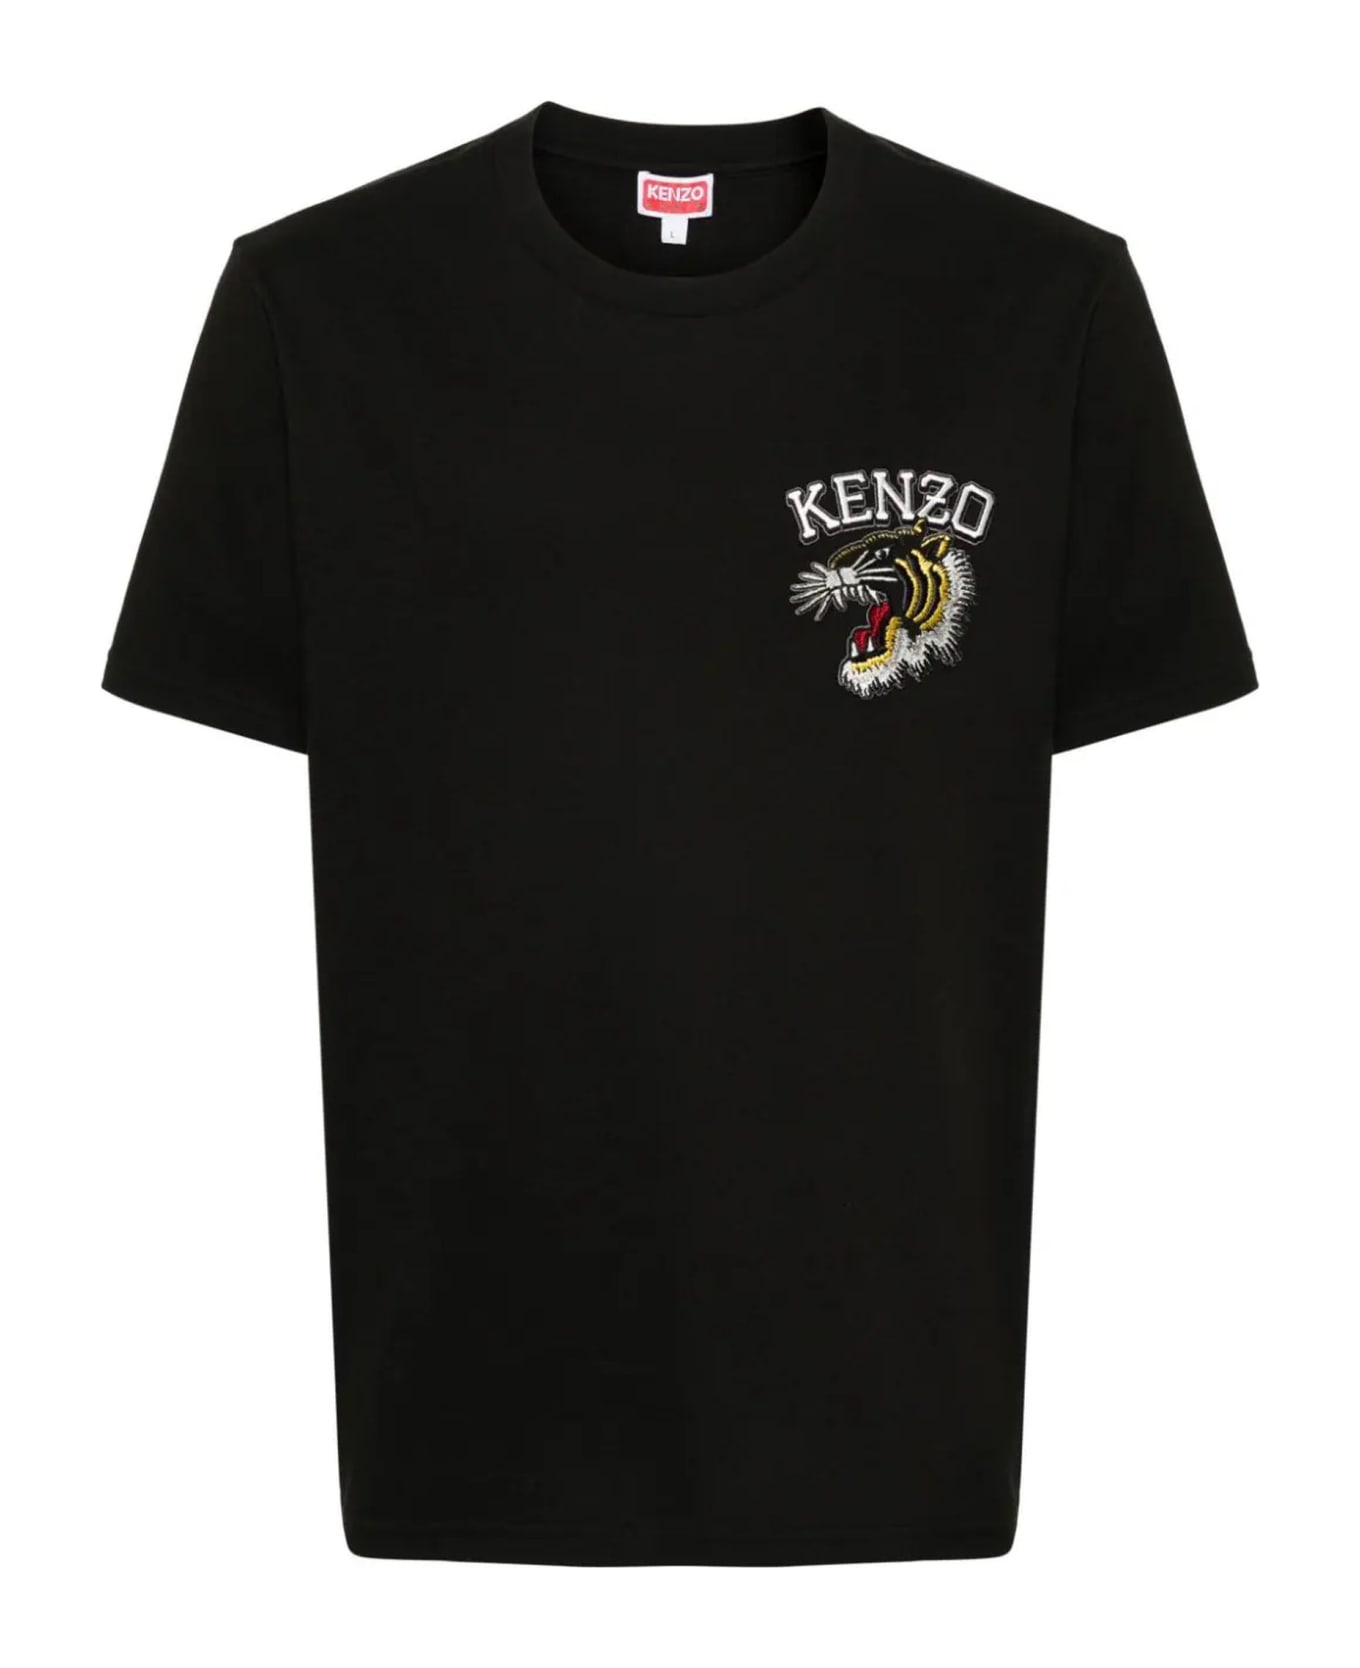 Kenzo T-shirts And Polos Black - Black